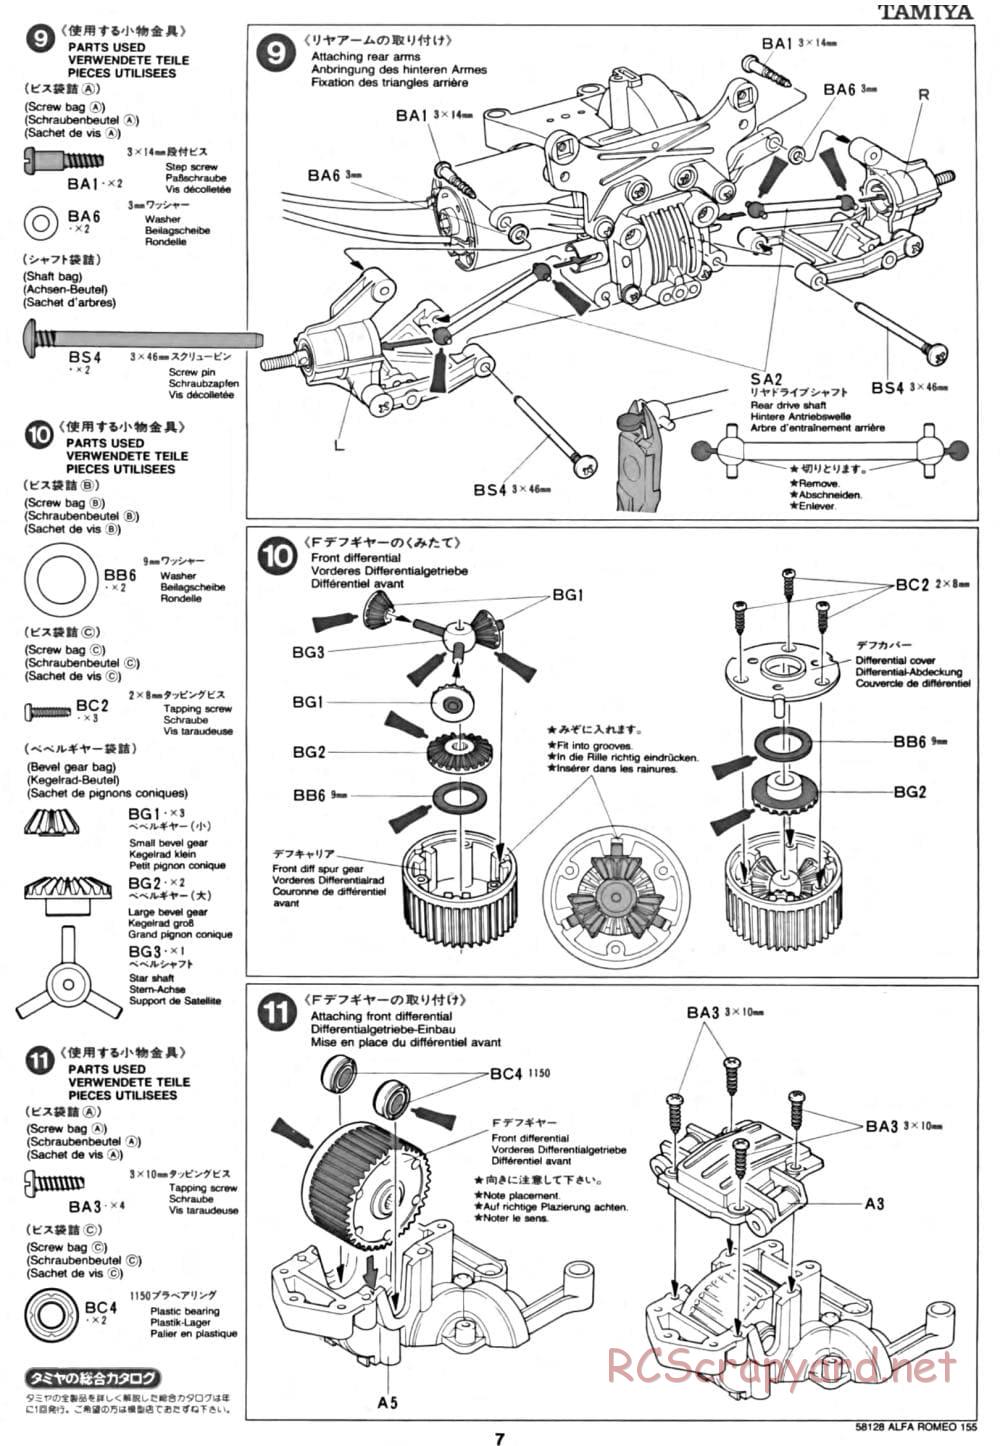 Tamiya - Alfa Romeo 155 V6 TI - TA-02 Chassis - Manual - Page 7